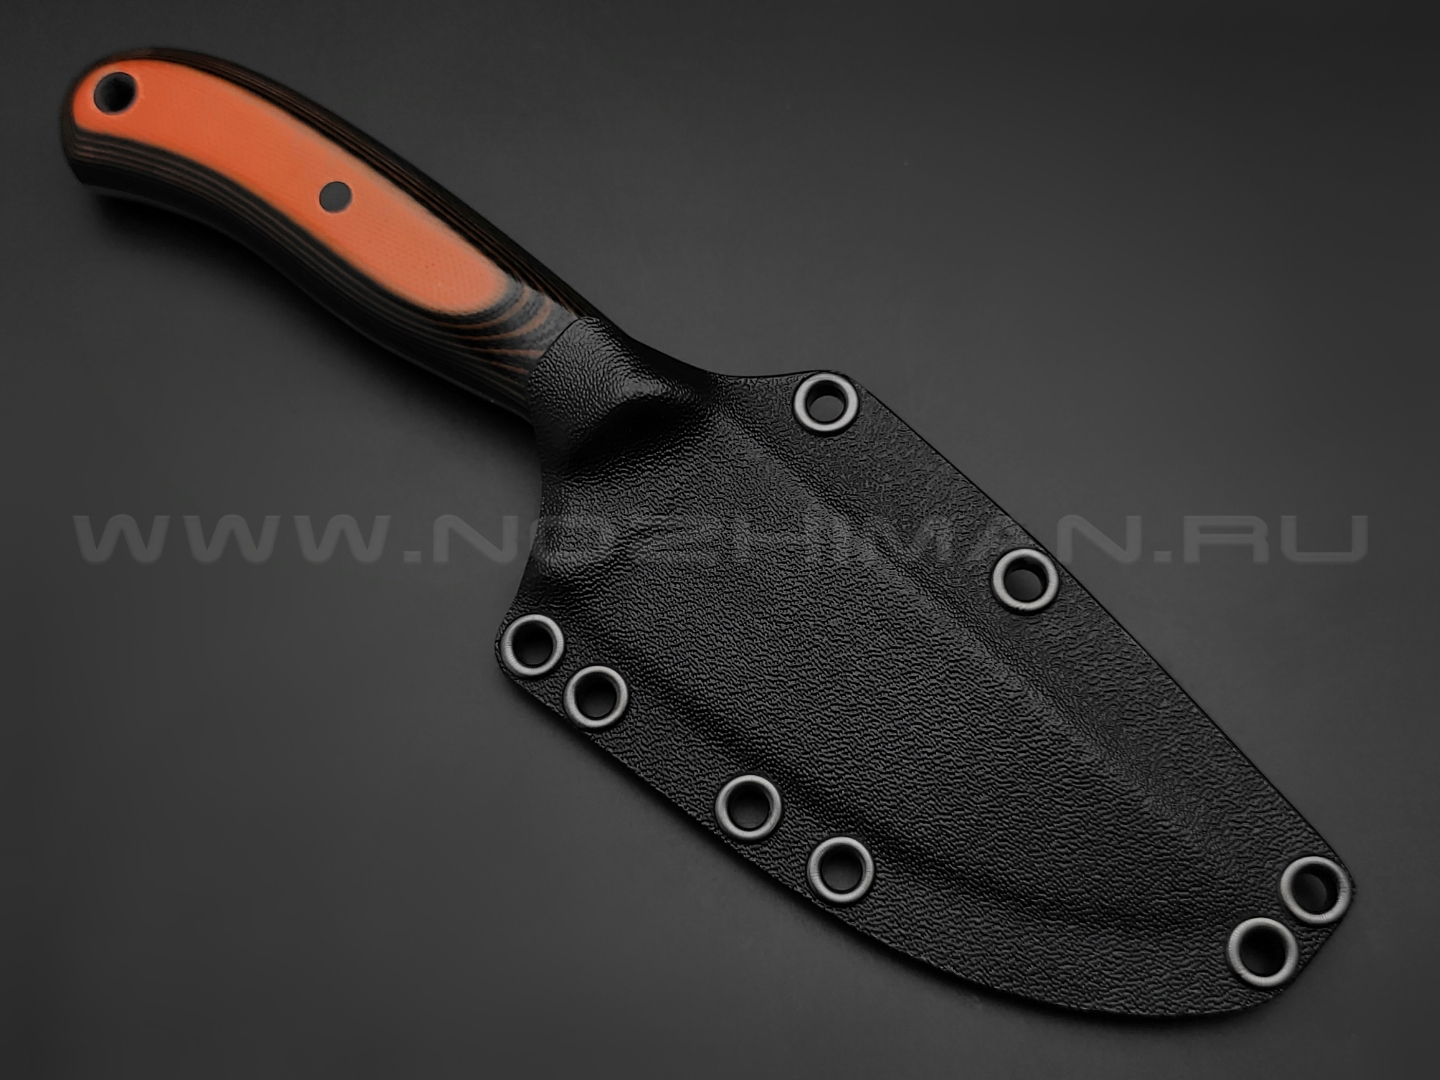 Волчий Век нож Mark-I сталь Niolox WA, рукоять G10 black & orange